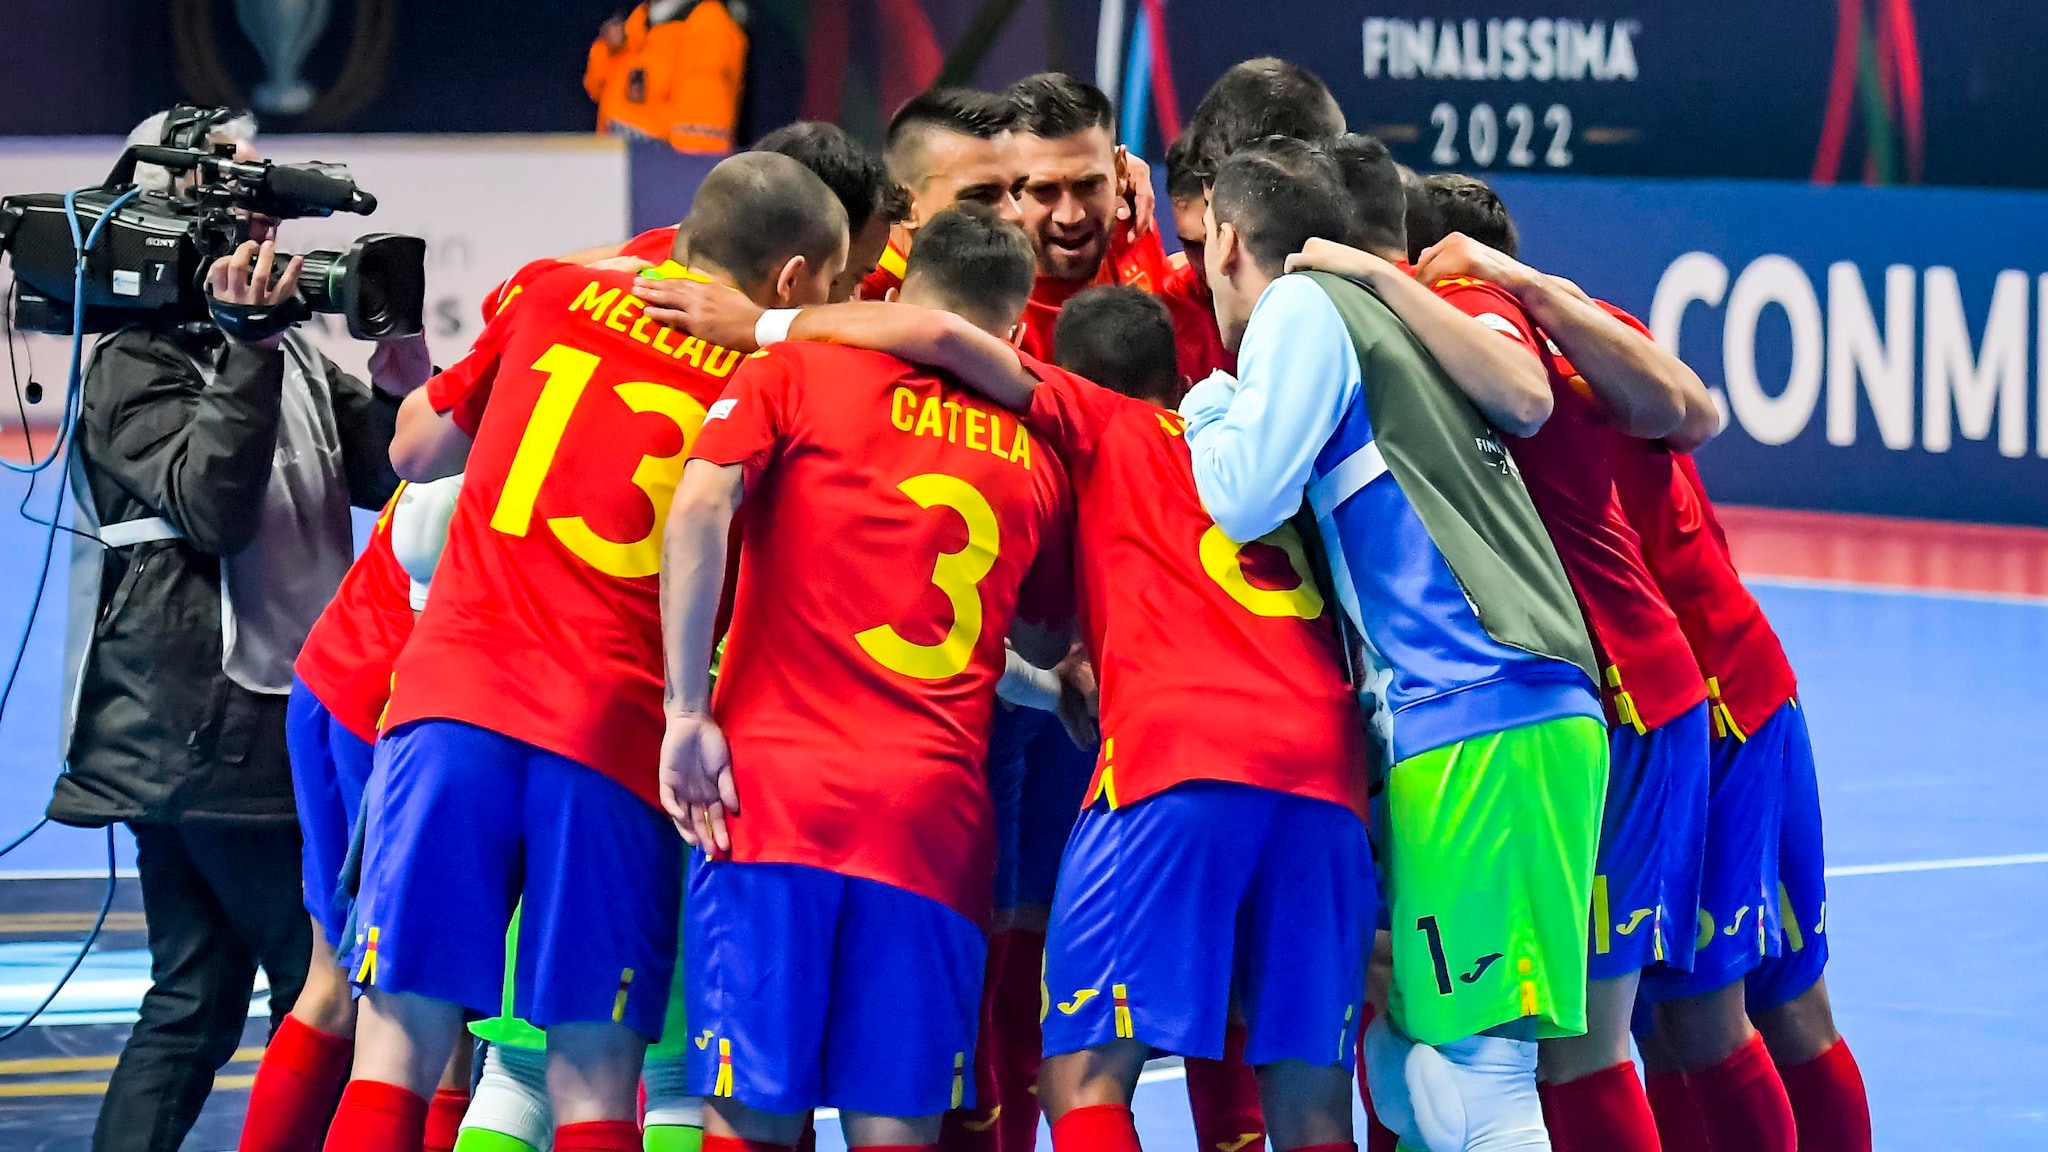 Espanha x Portugal, Final de Futsal Finalíssima: Onde assistir, hora do